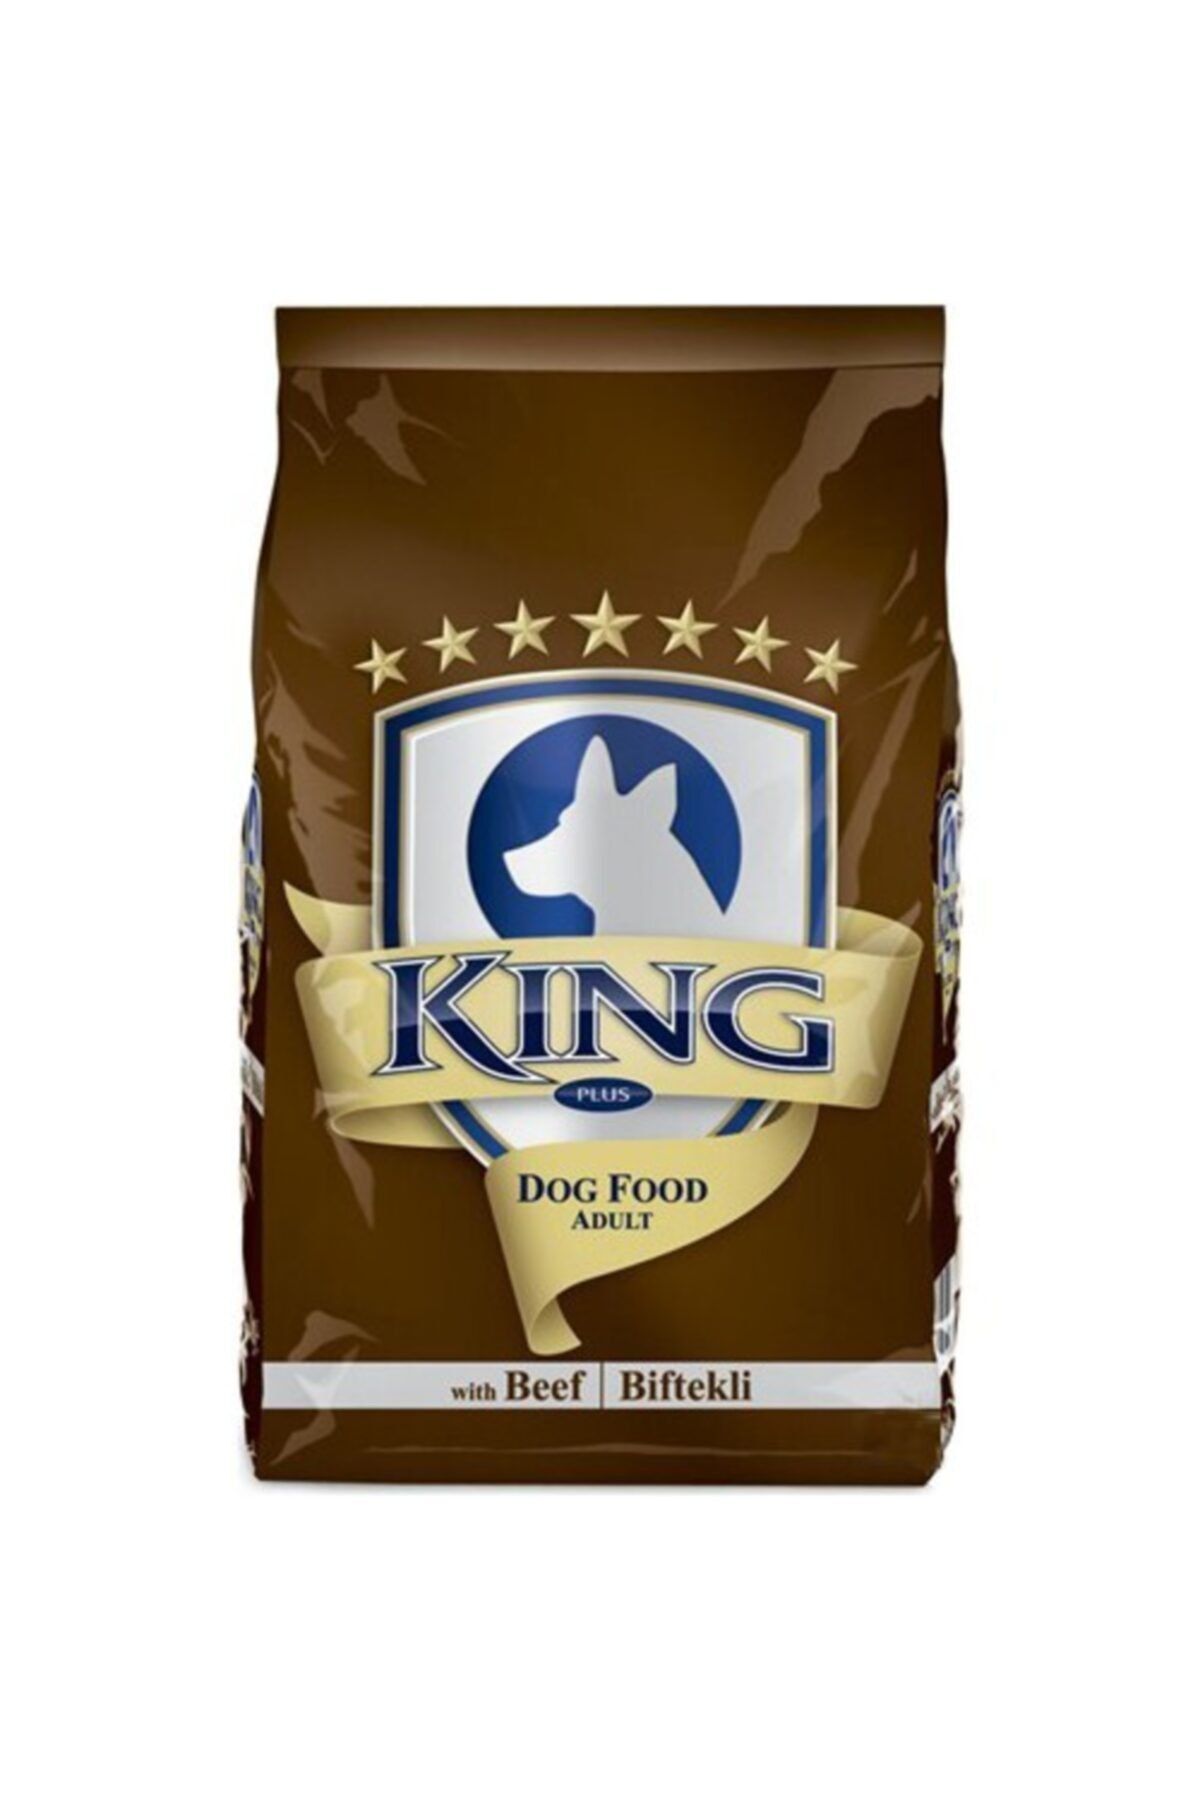 King Biftekli Tek Öğünlük Dost Köpek Maması 150 gr